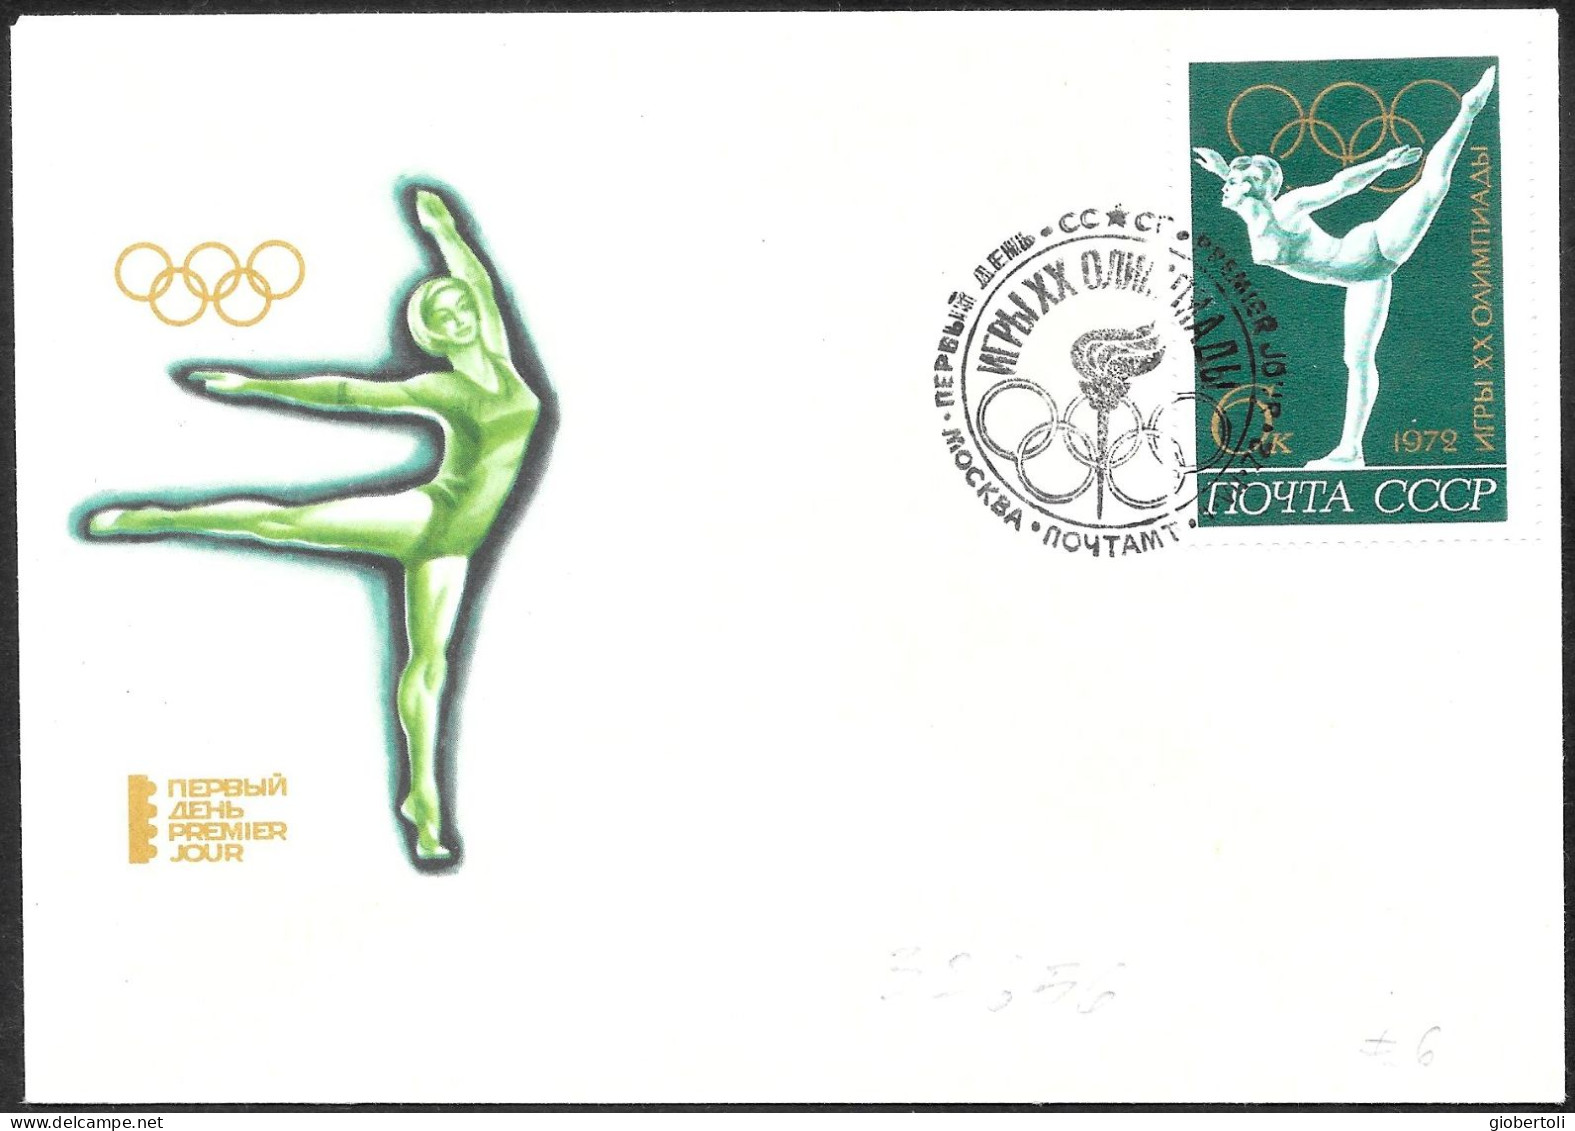 URSS: FDC, Ginnastica Femminile, Women's Gymnastics, Gymnastique Féminine - Summer 1972: Munich